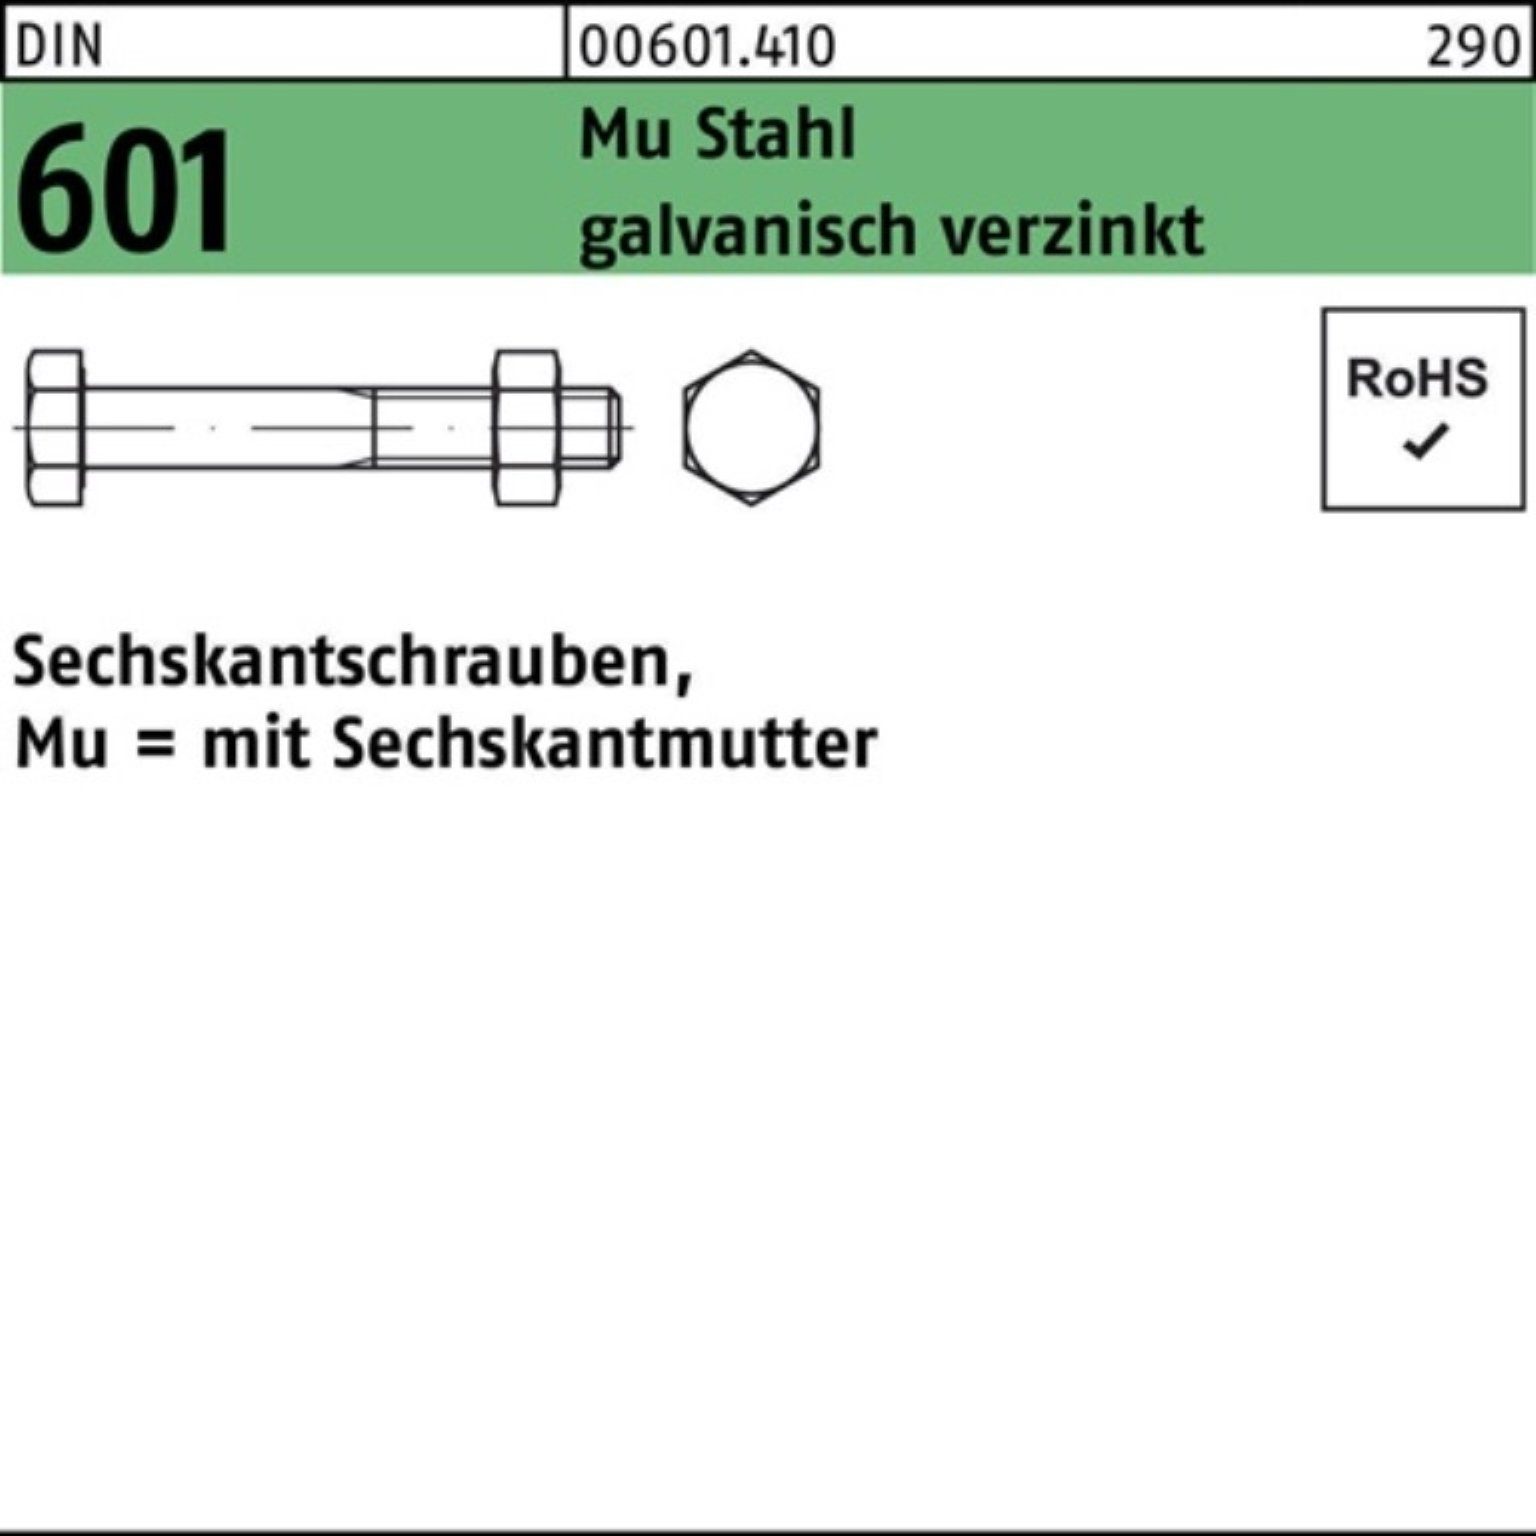 Reyher Sechskantmutter 200er Pack Sechskantschraube DIN 601 Sechskantmutter M6x35 Mu Stahl 4.